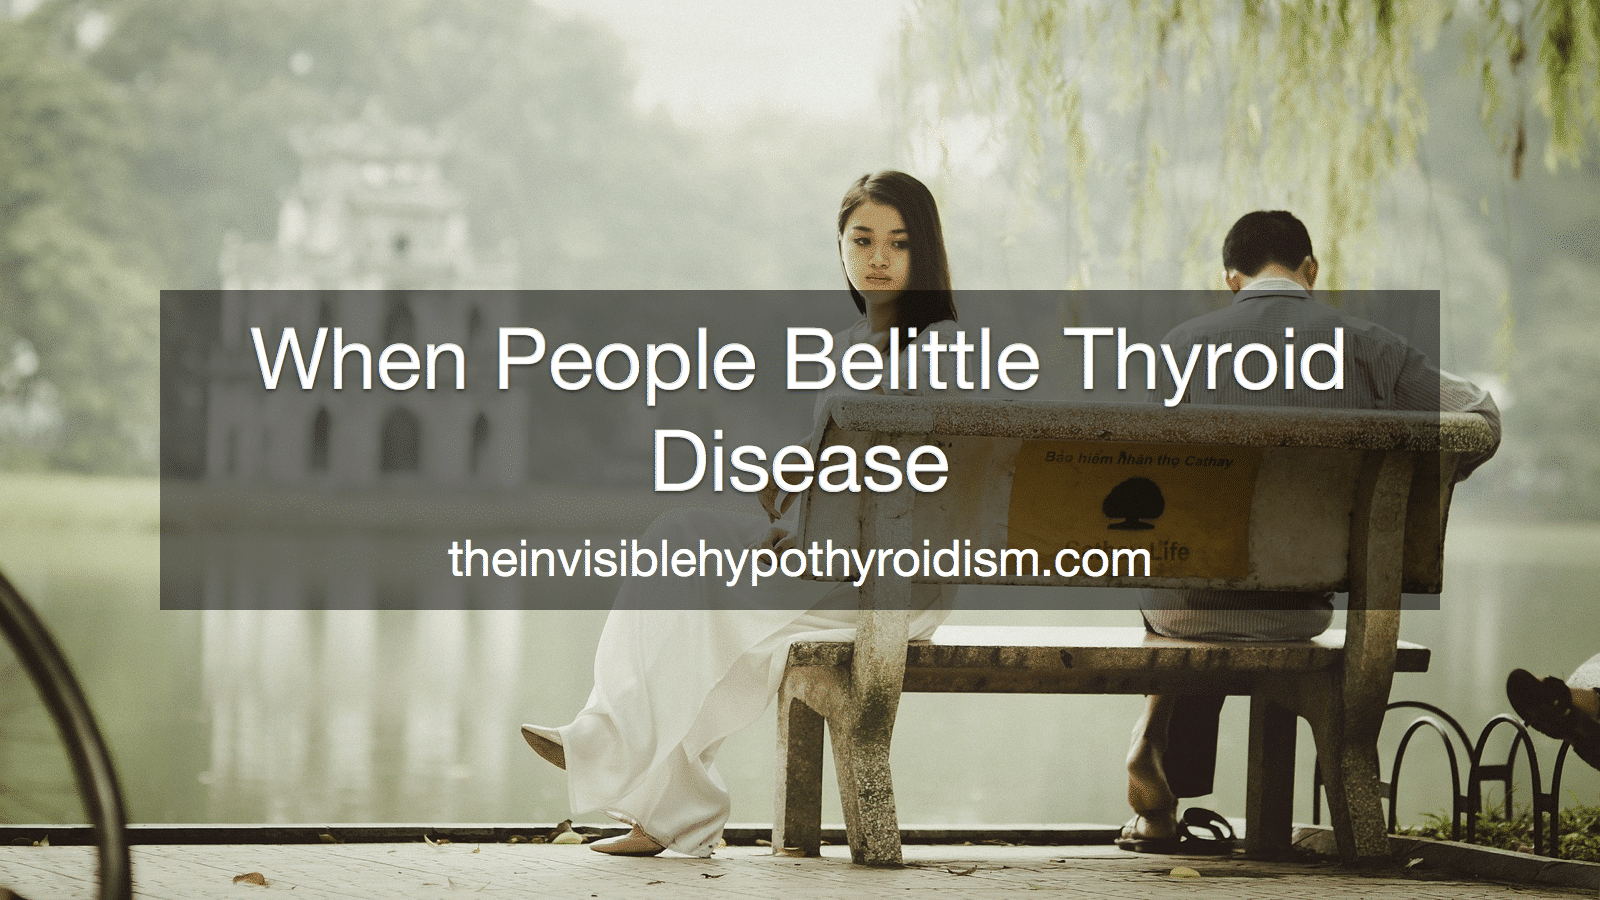 When People Belittle Thyroid Disease